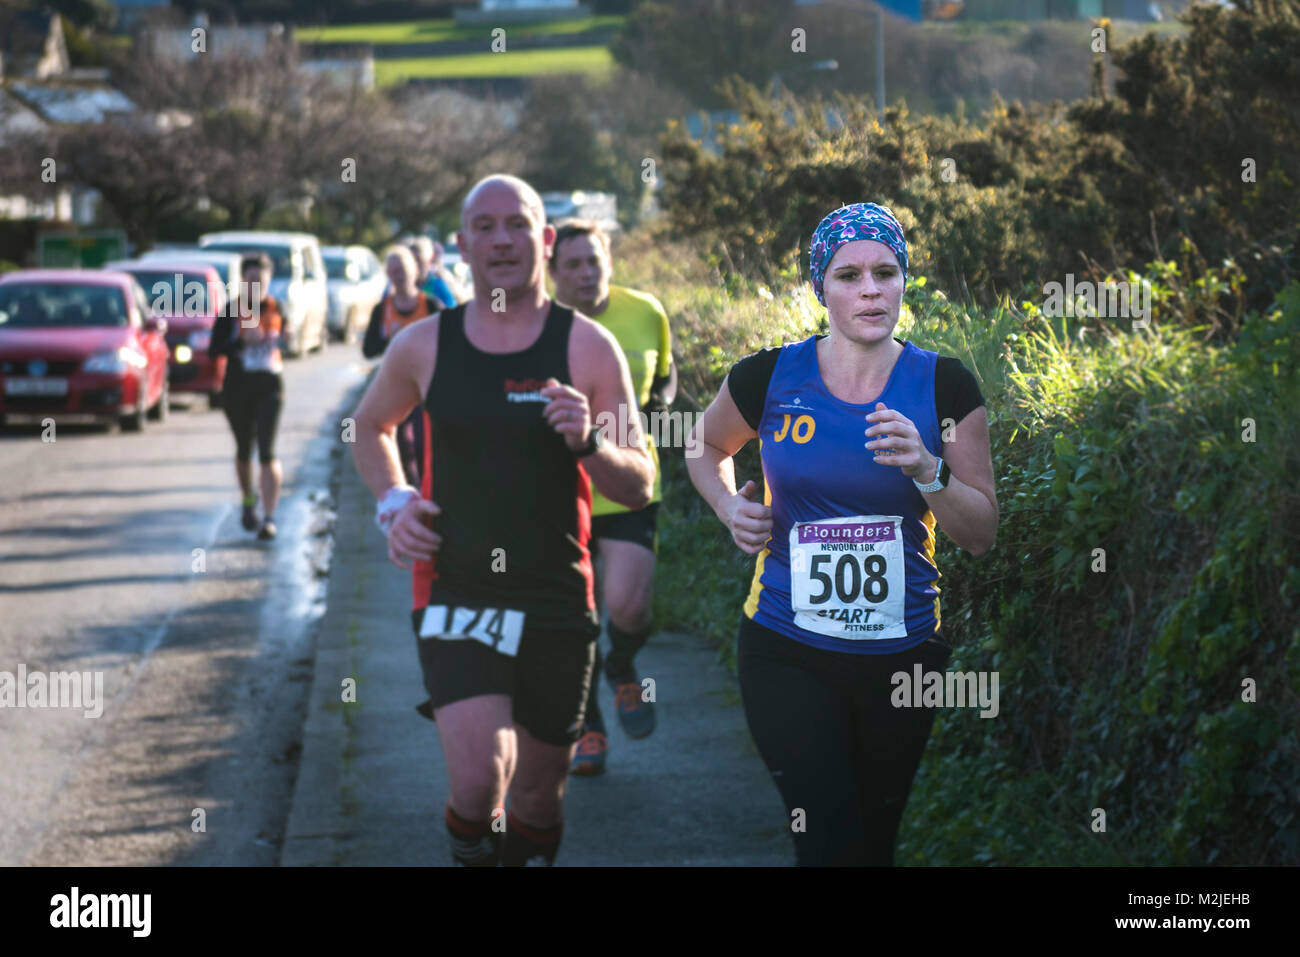 Los corredores compitiendo en una carrera de carretera en Newquay, Cornwall. Foto de stock